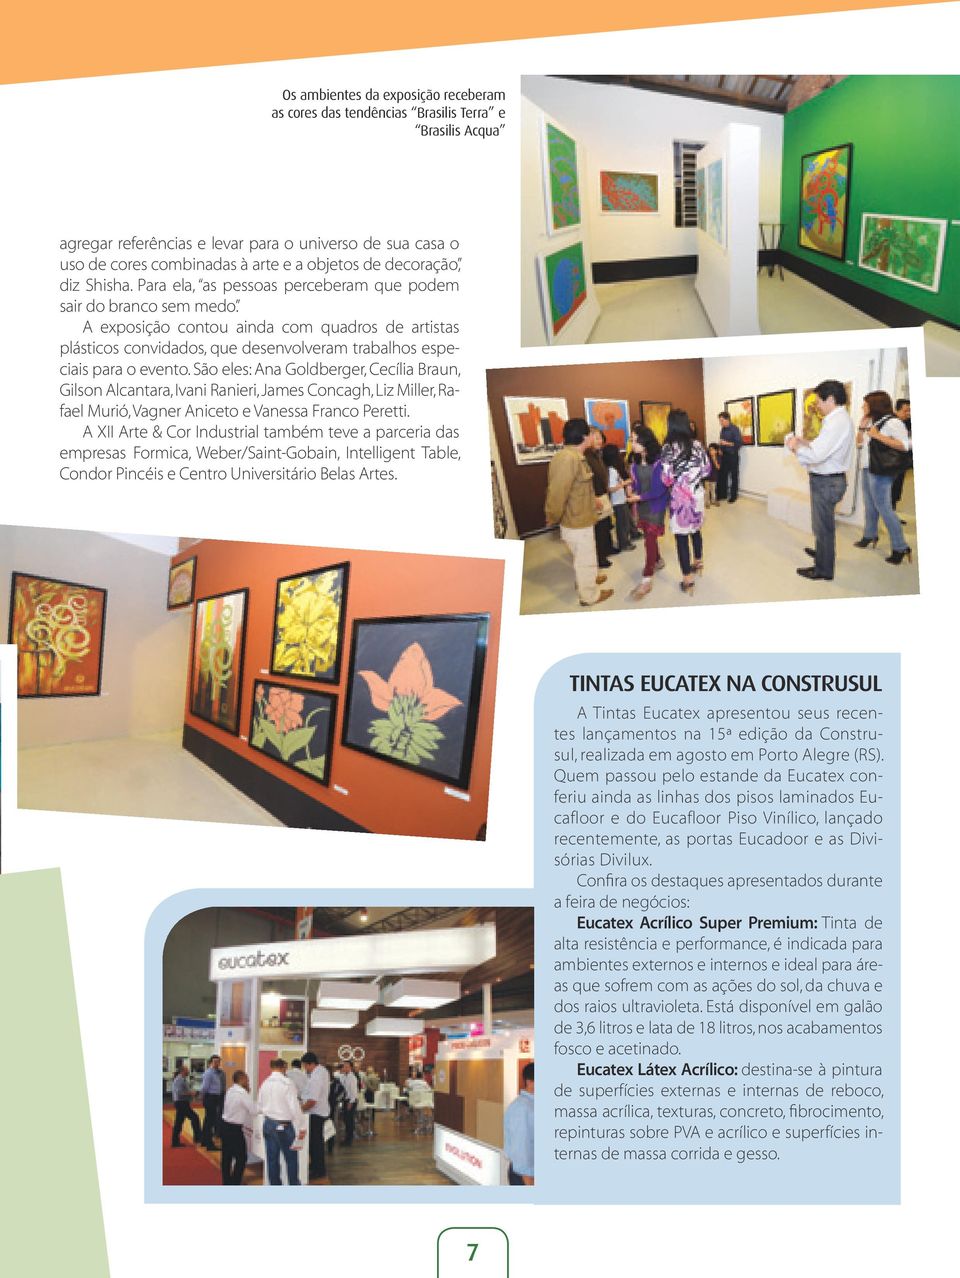 A exposição contou ainda com quadros de artistas plásticos convidados, que desenvolveram trabalhos especiais para o evento.